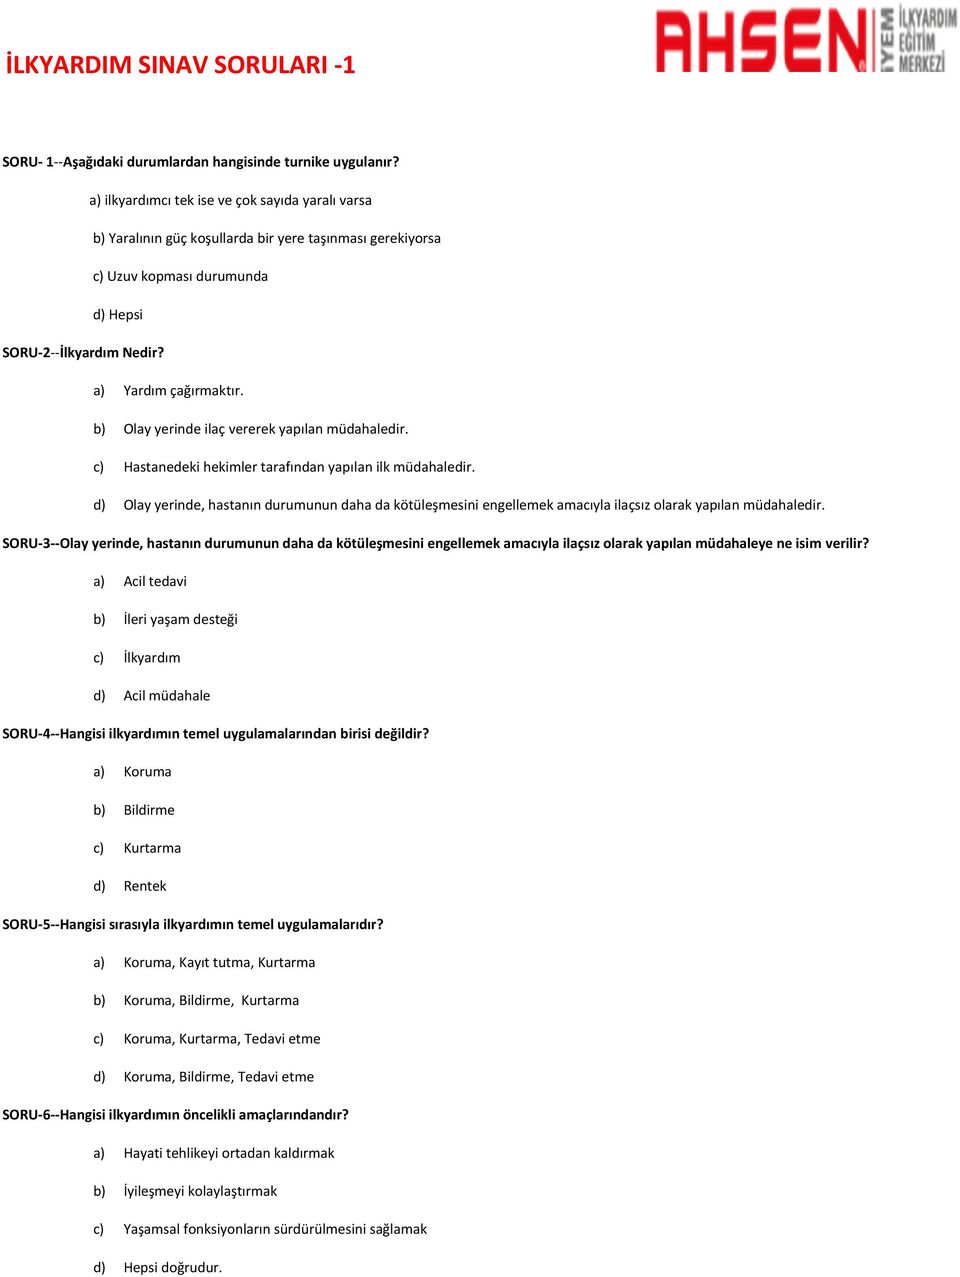 ilk yardım soruları ve cevapları pdf